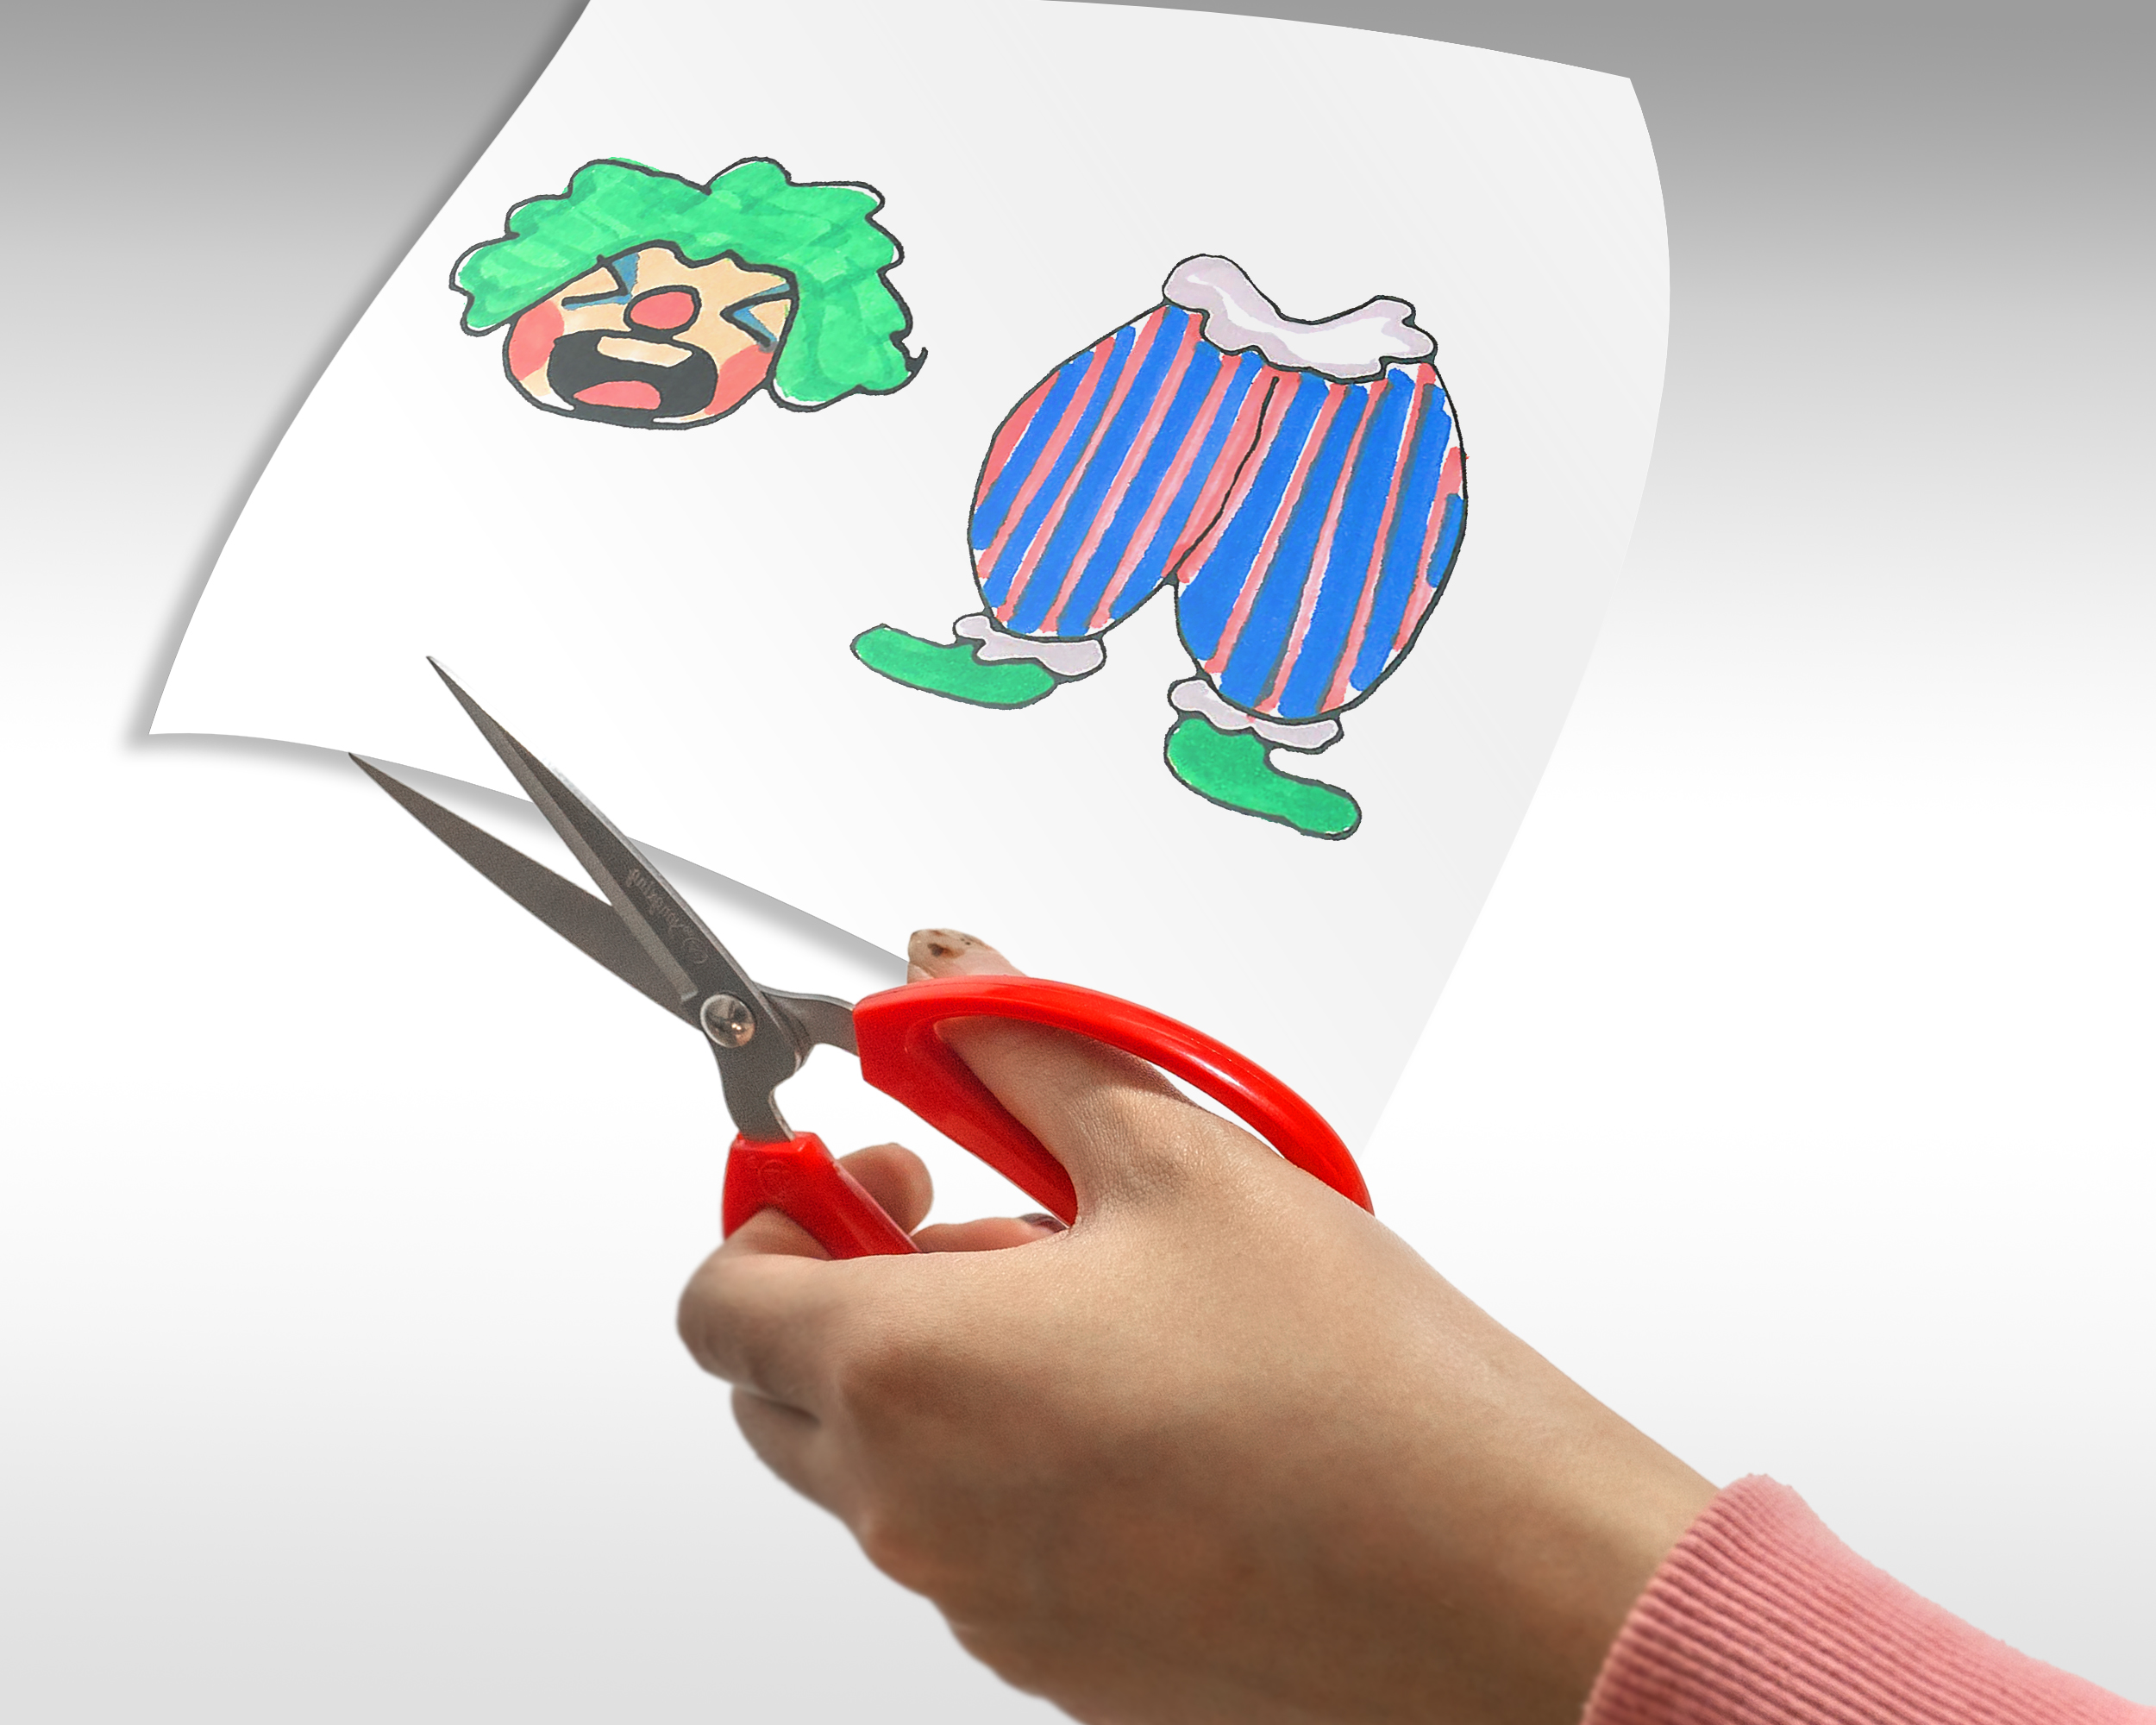 简单又漂亮手工小DIY礼物 一步一步教你小丑手绘剪纸动画DIY方法图解